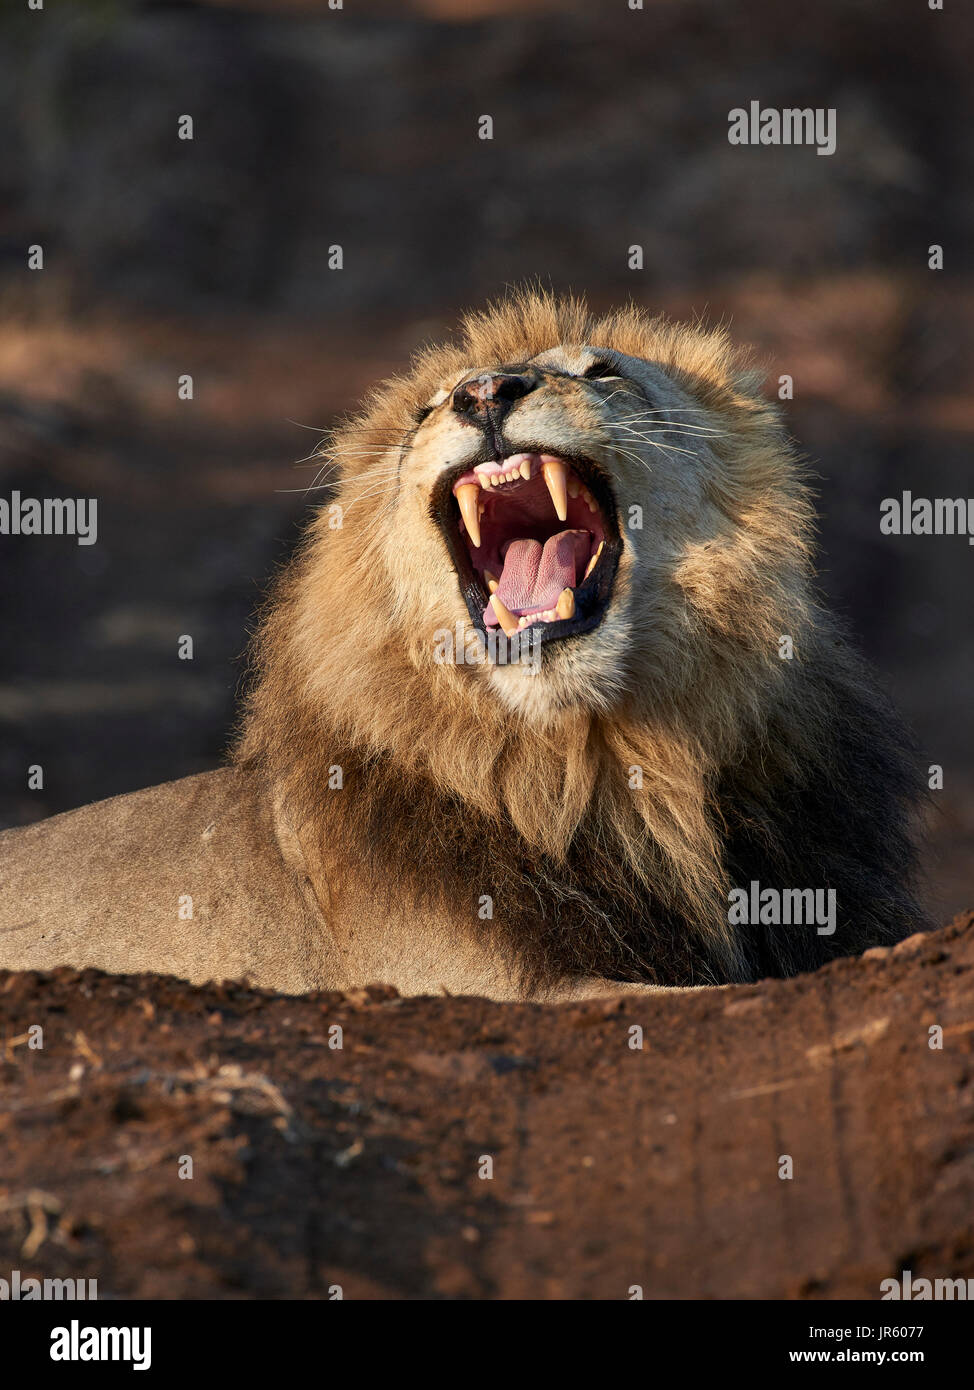 León (Panthera leo) - macho grande tumbado en el suelo, Retrato Foto de stock